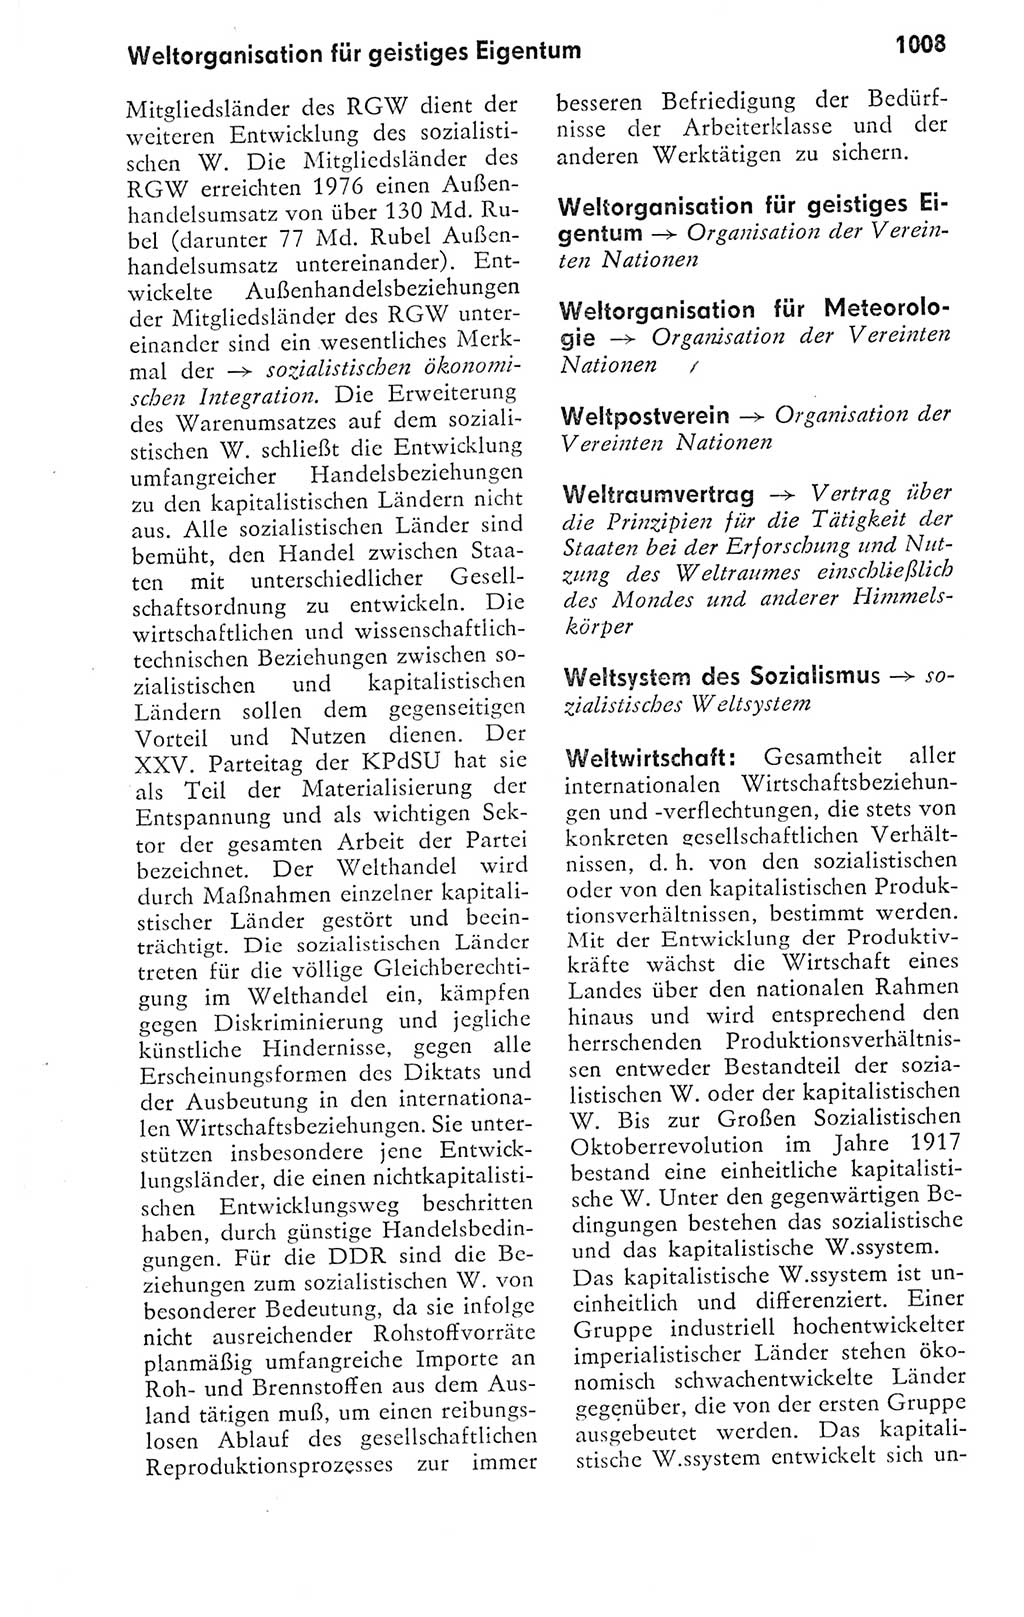 Kleines politisches Wörterbuch [Deutsche Demokratische Republik (DDR)] 1978, Seite 1008 (Kl. pol. Wb. DDR 1978, S. 1008)